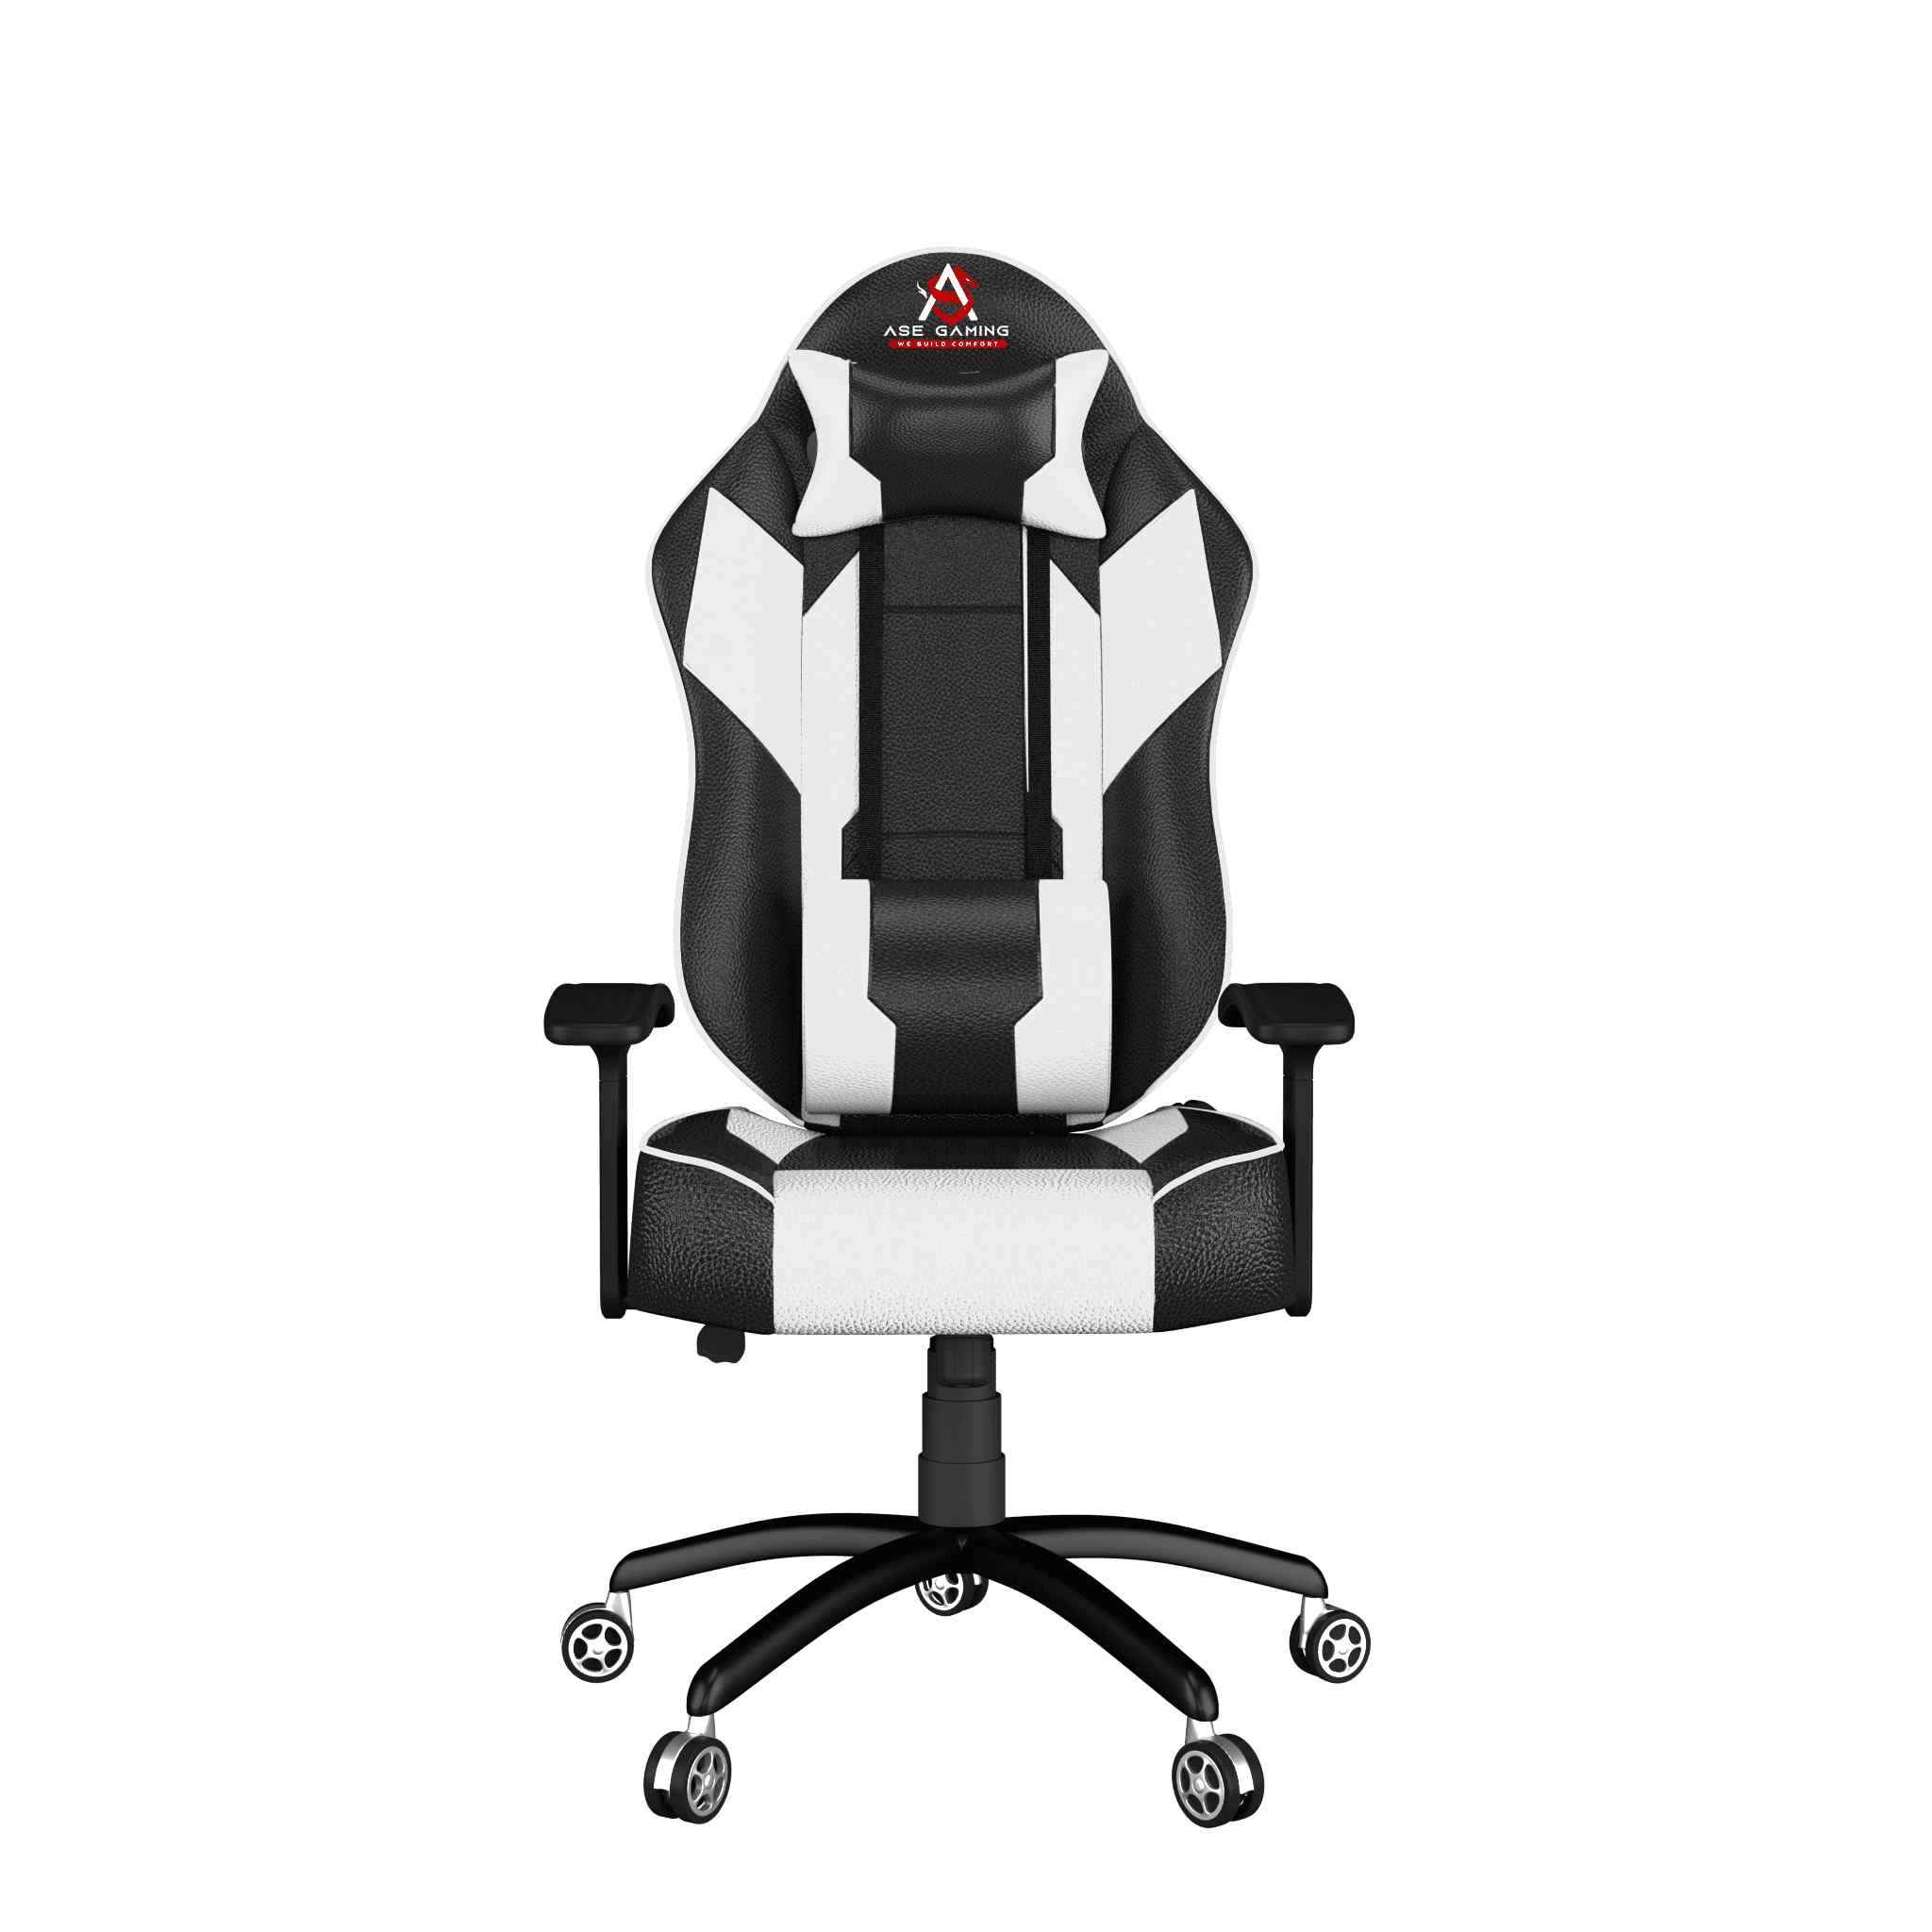 ASE Gaming Modern Series Gaming Chair (White & Black)